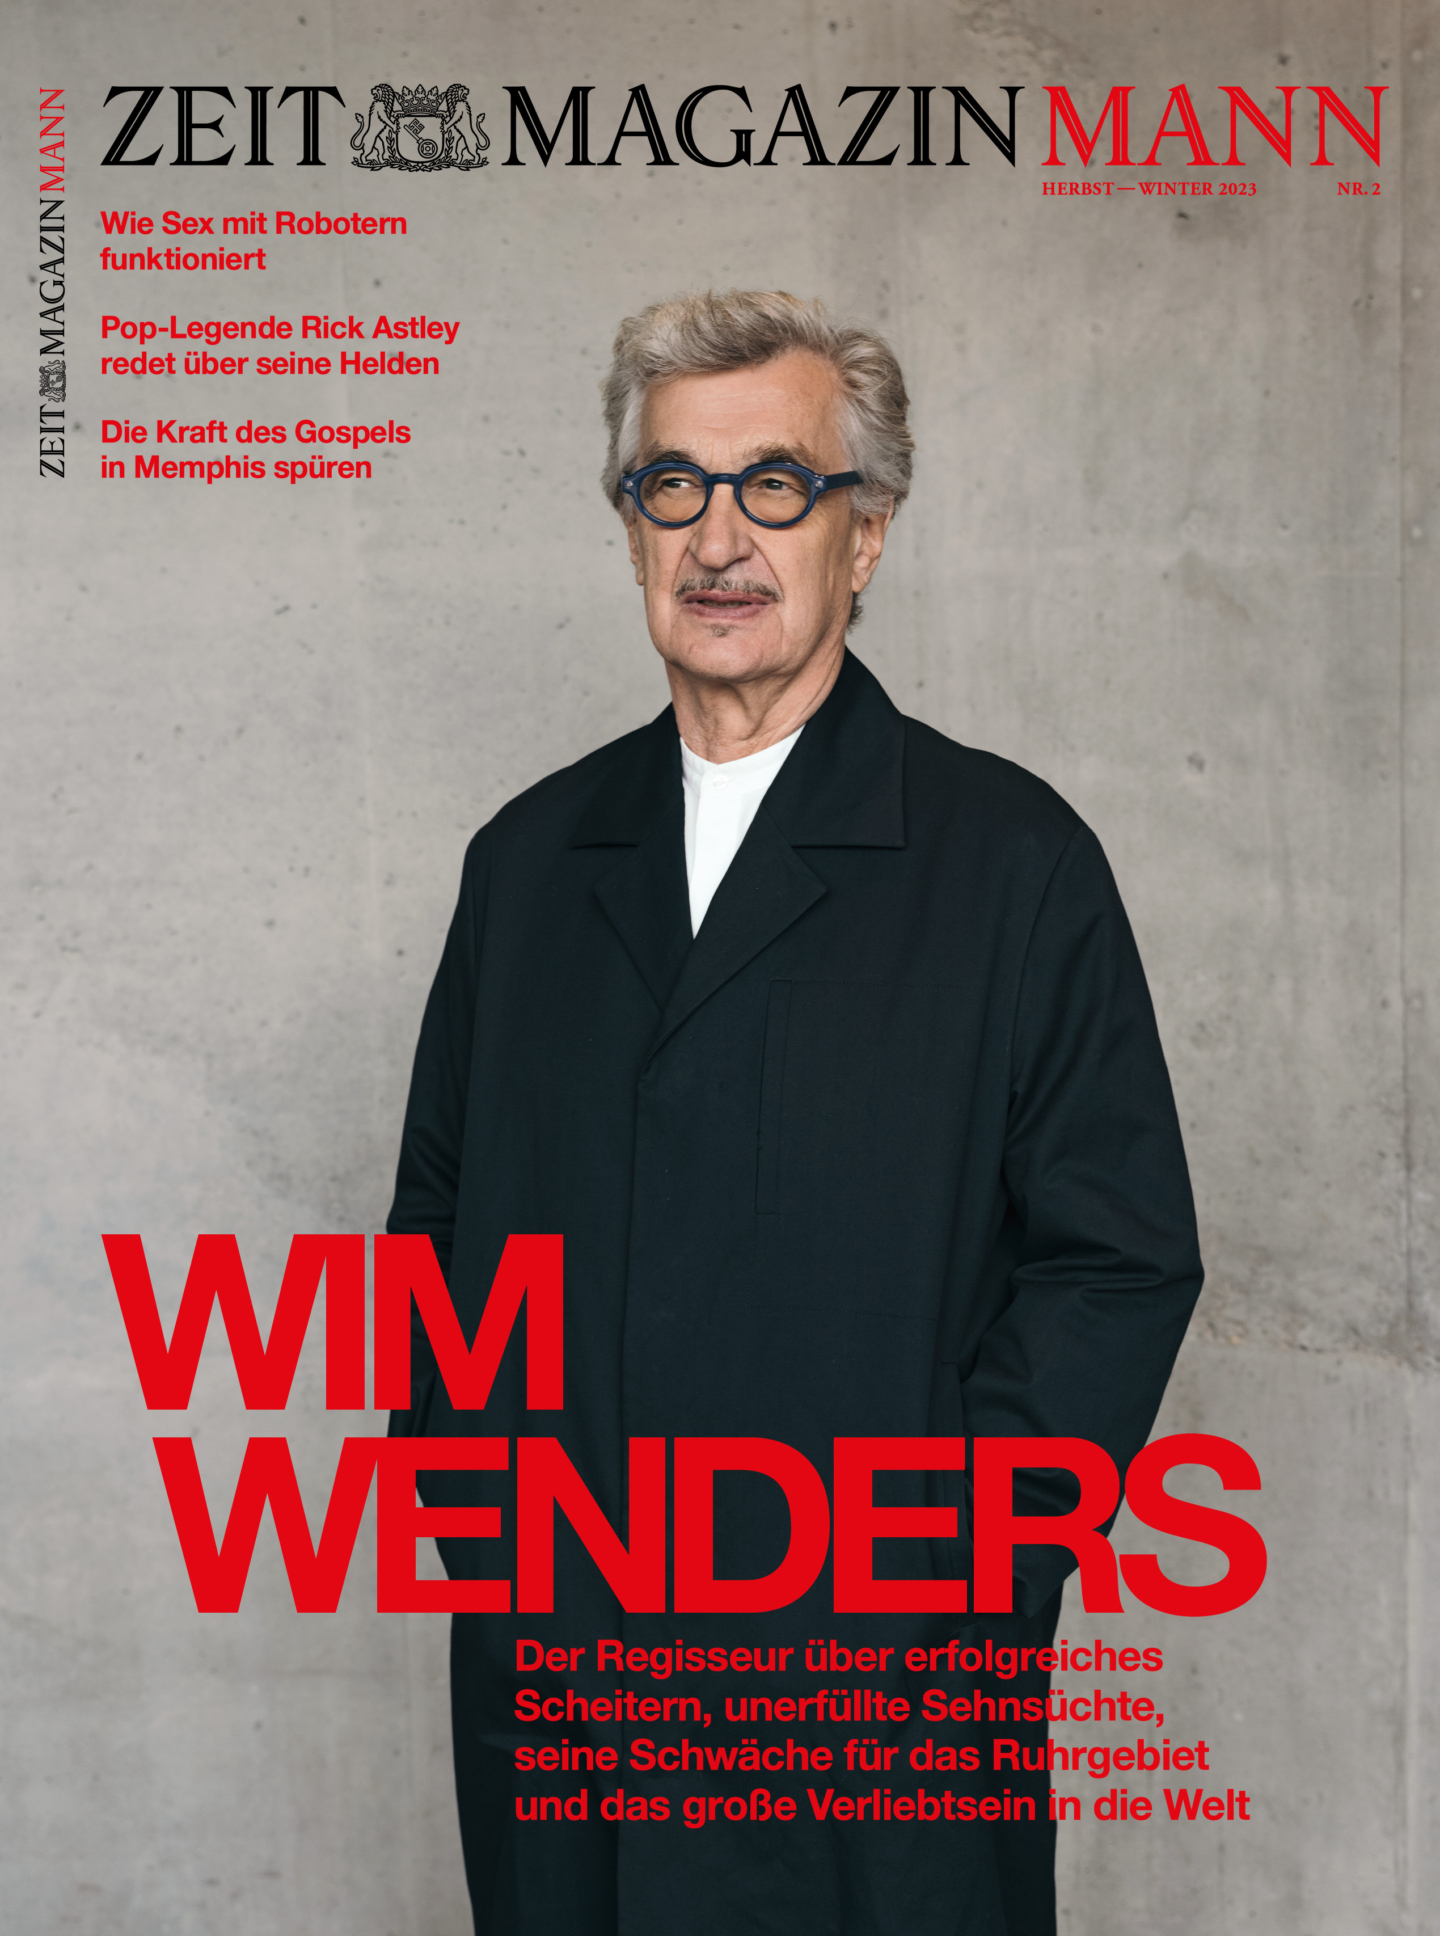 Wim Wenders for ZEIT Mann